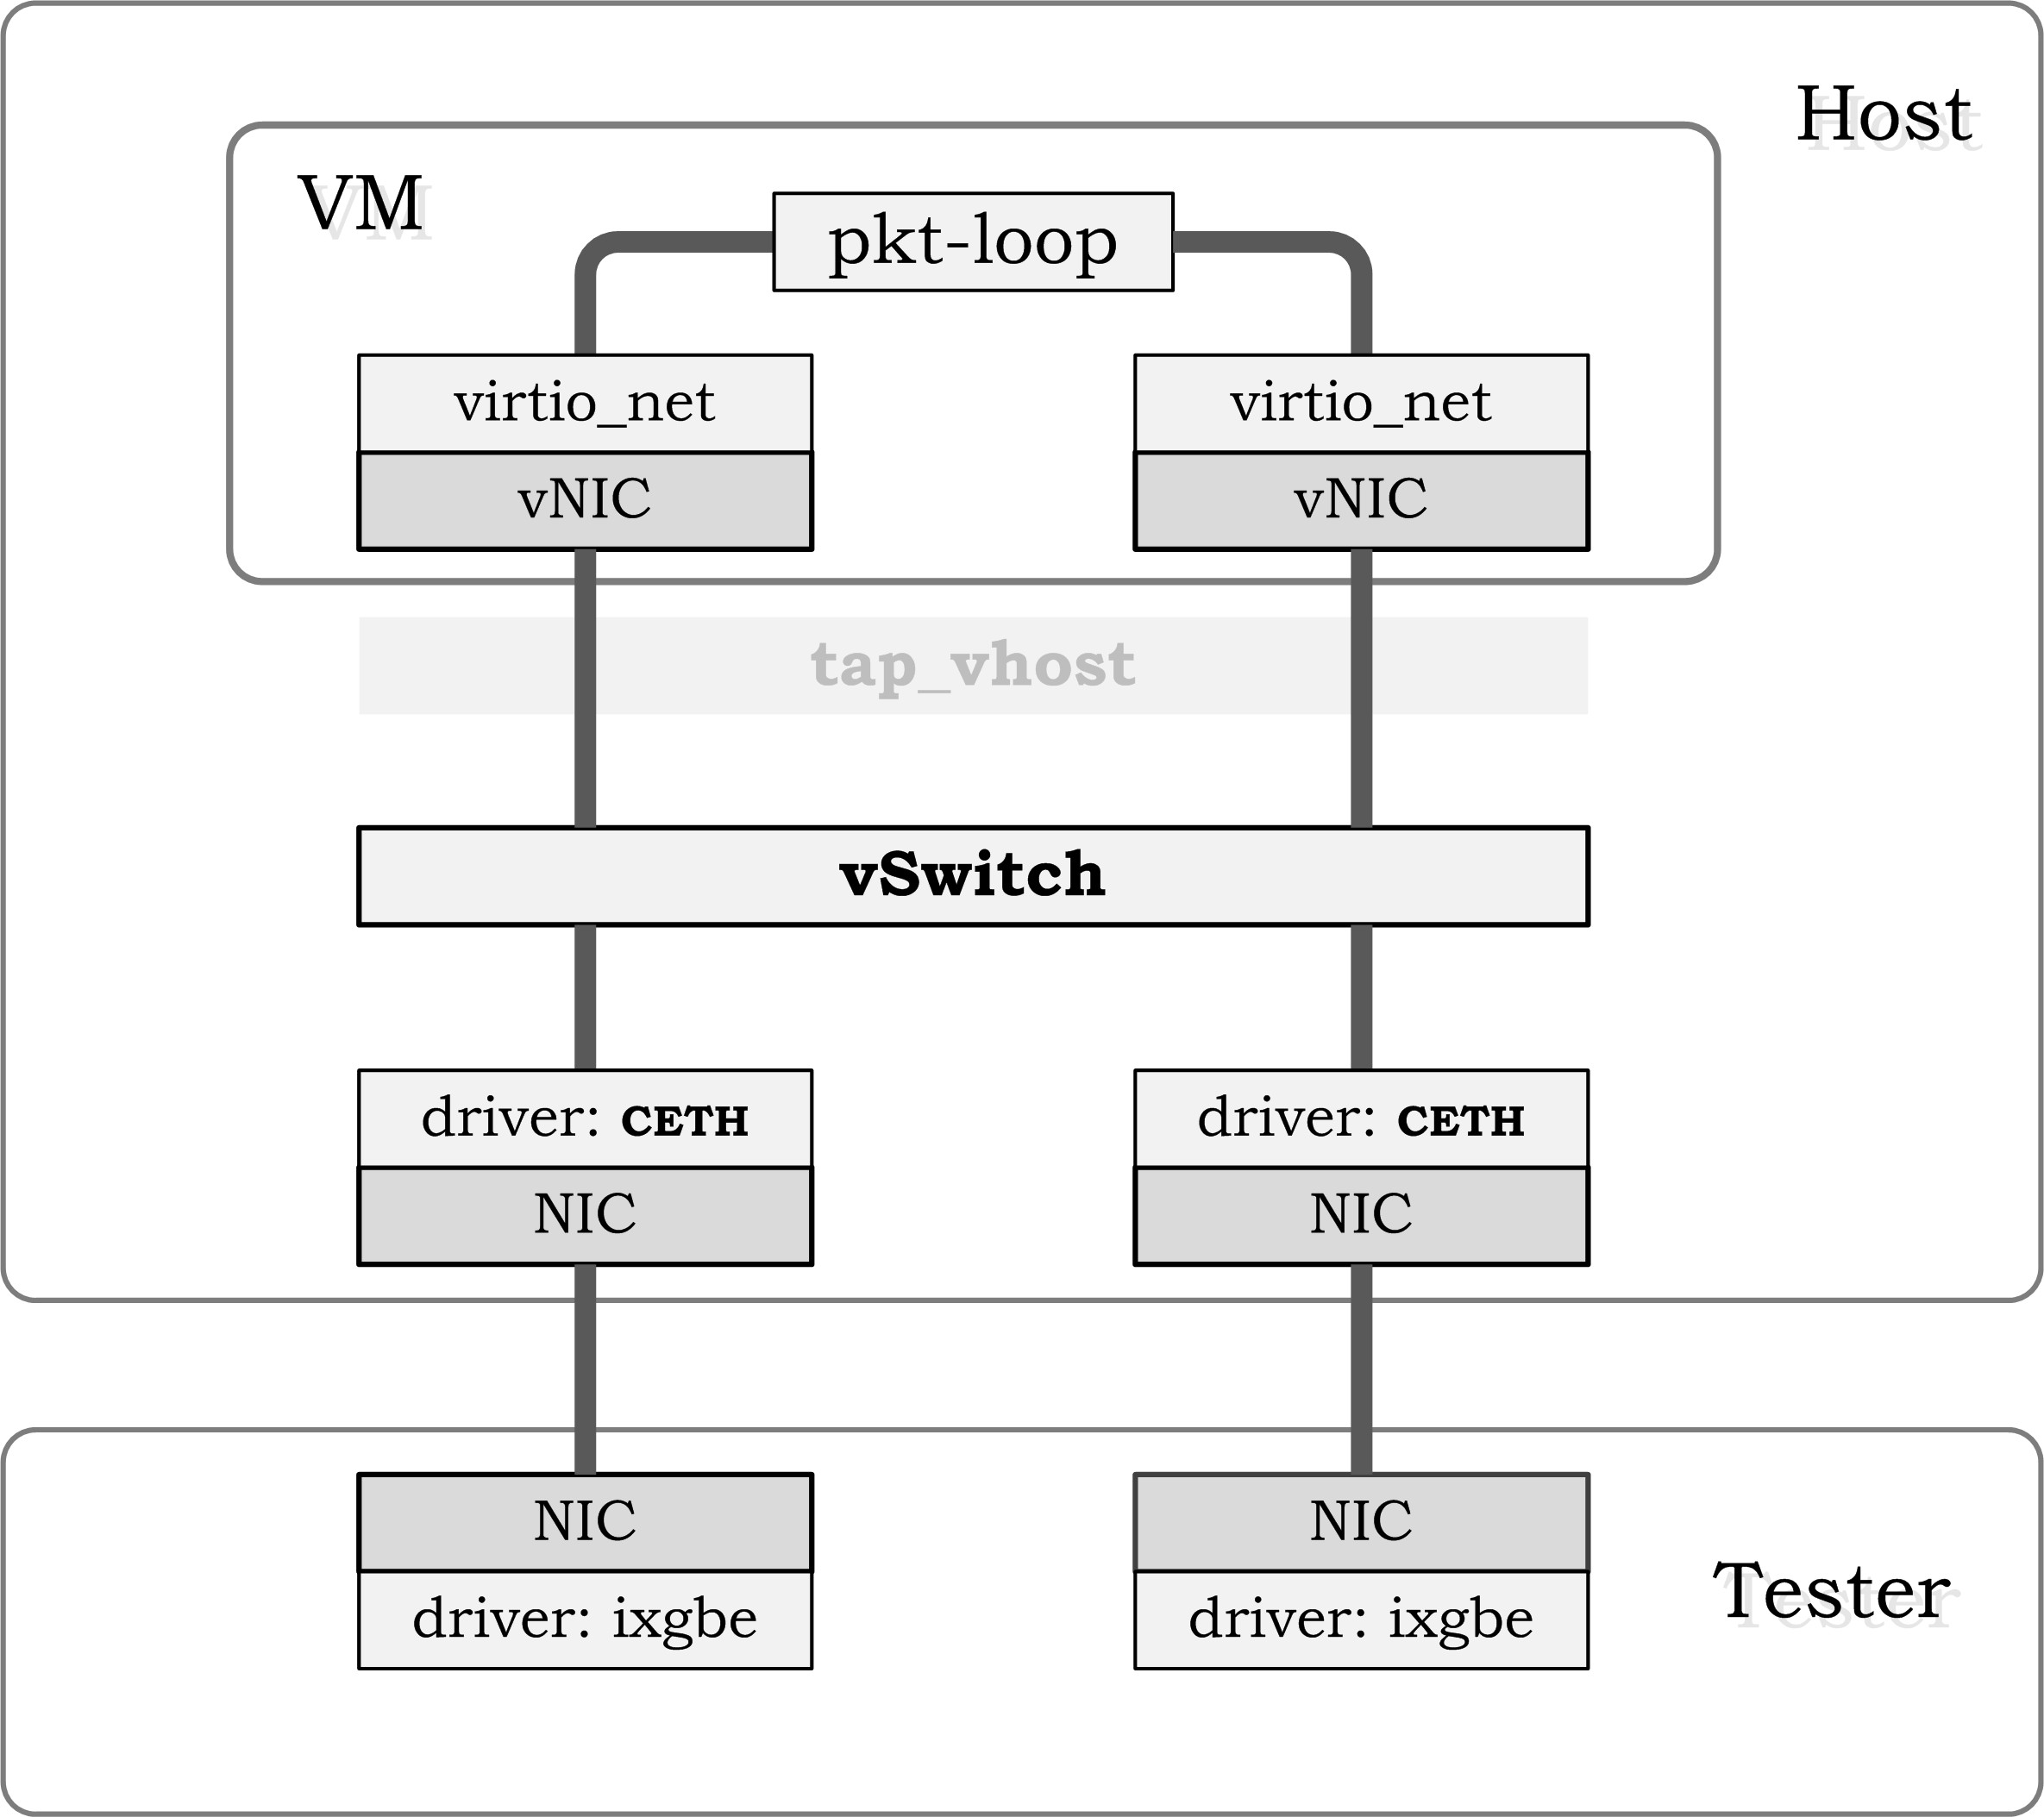 testsuites/vstf/vstf_scripts/vstf/controller/res/deployment/Tnv.jpg